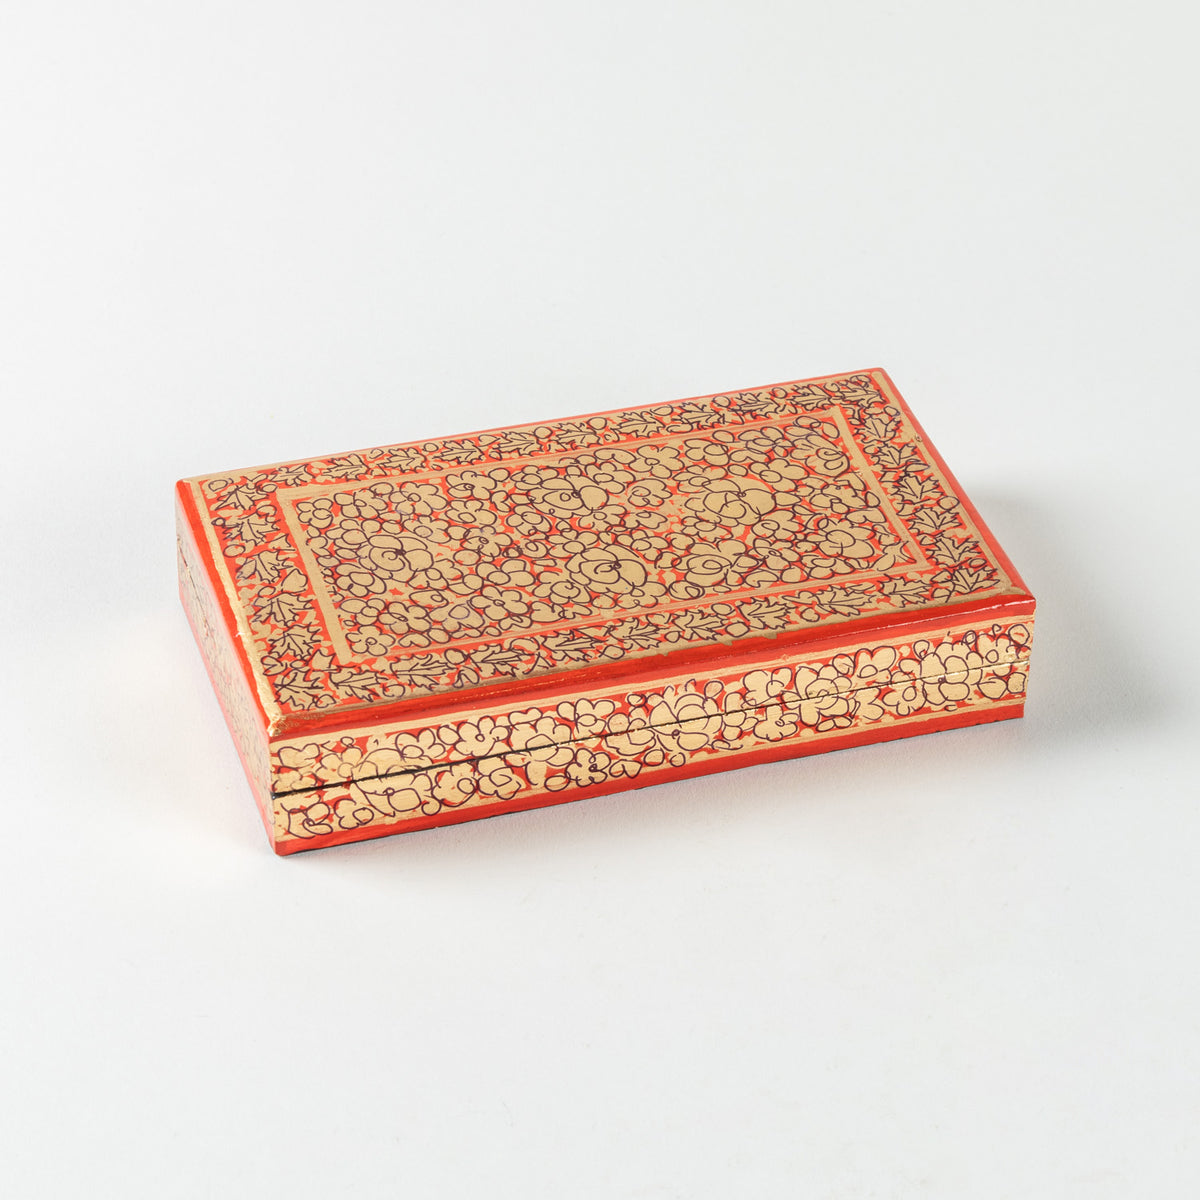 Hand Painted Papier Mache Box in Orange & Gold - 4x7